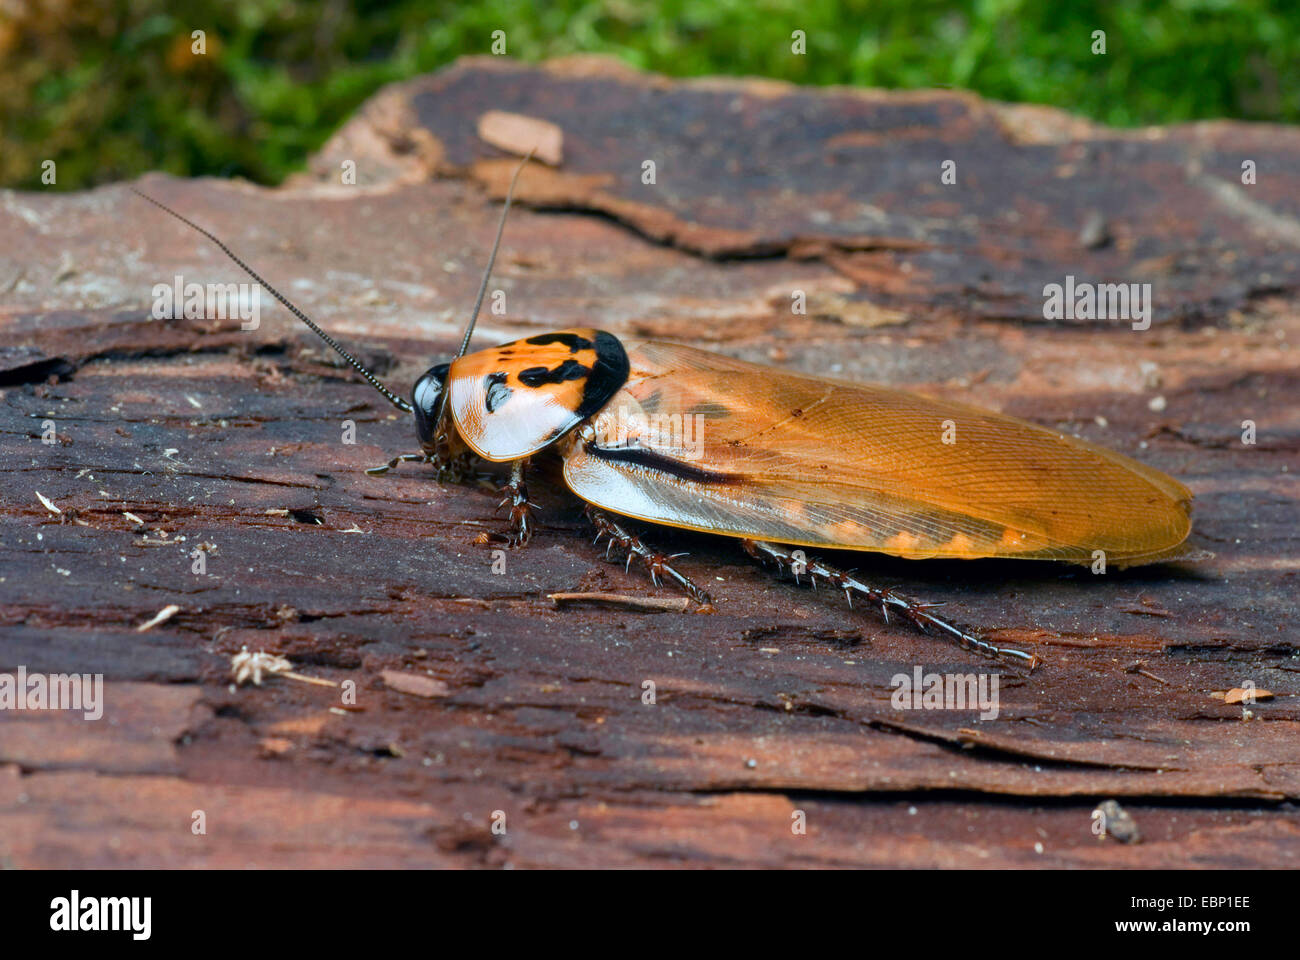 4 spots roach (Eublaberus distanti), sur l'écorce Banque D'Images